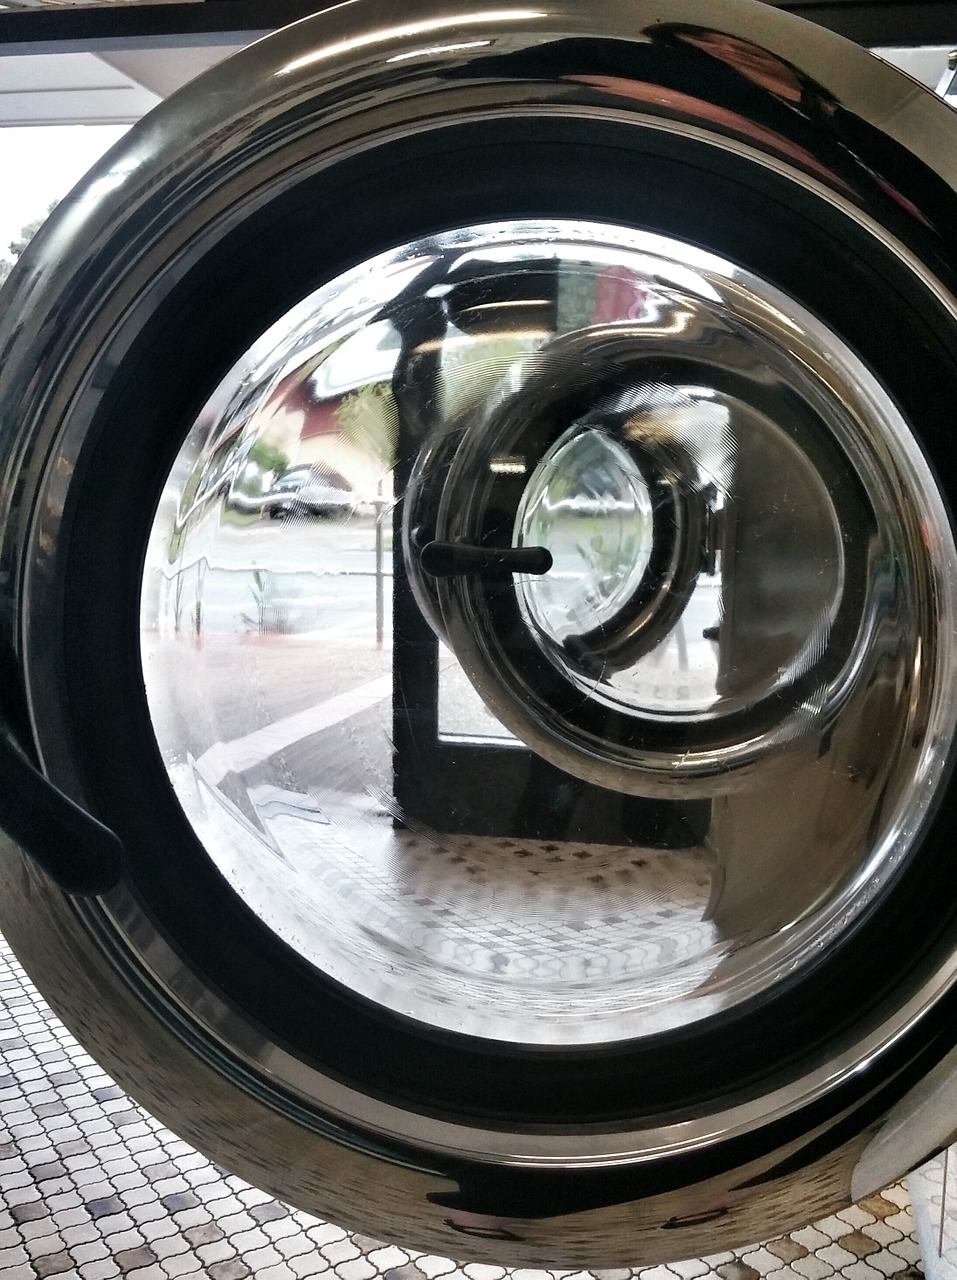 laundromat launderette washing free photo